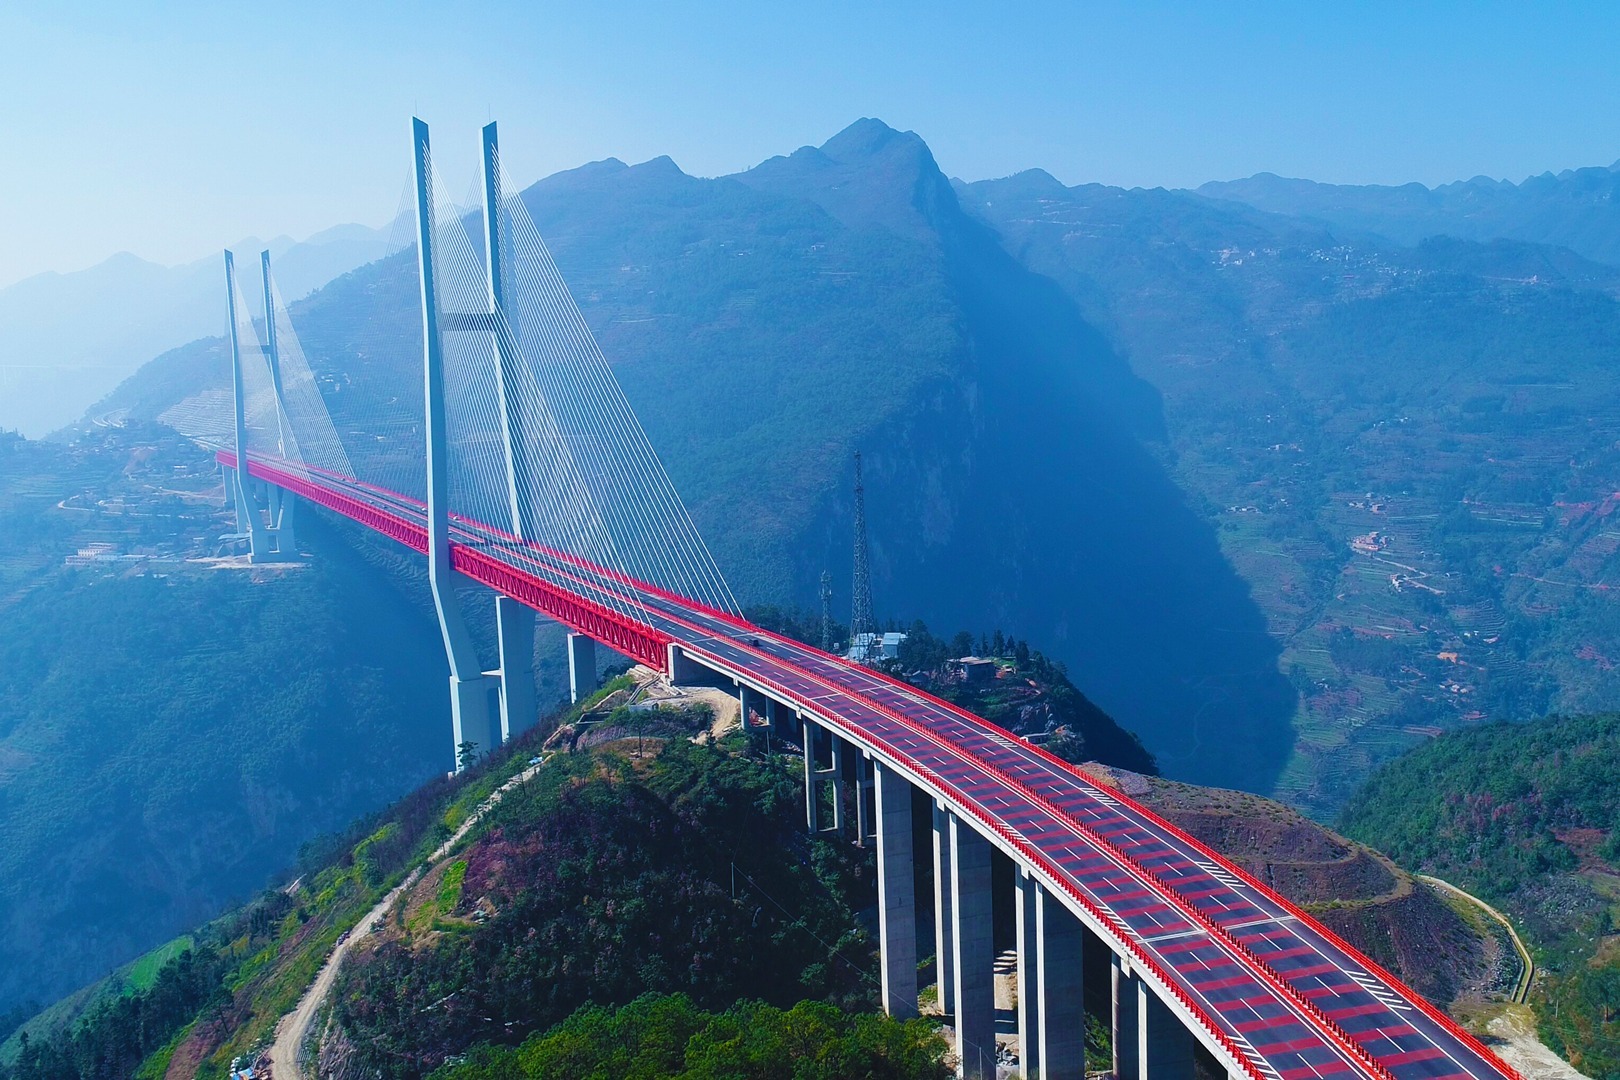 不愧为基建狂魔,中国建造的这些世界级大桥,老外看了都绝对叹服